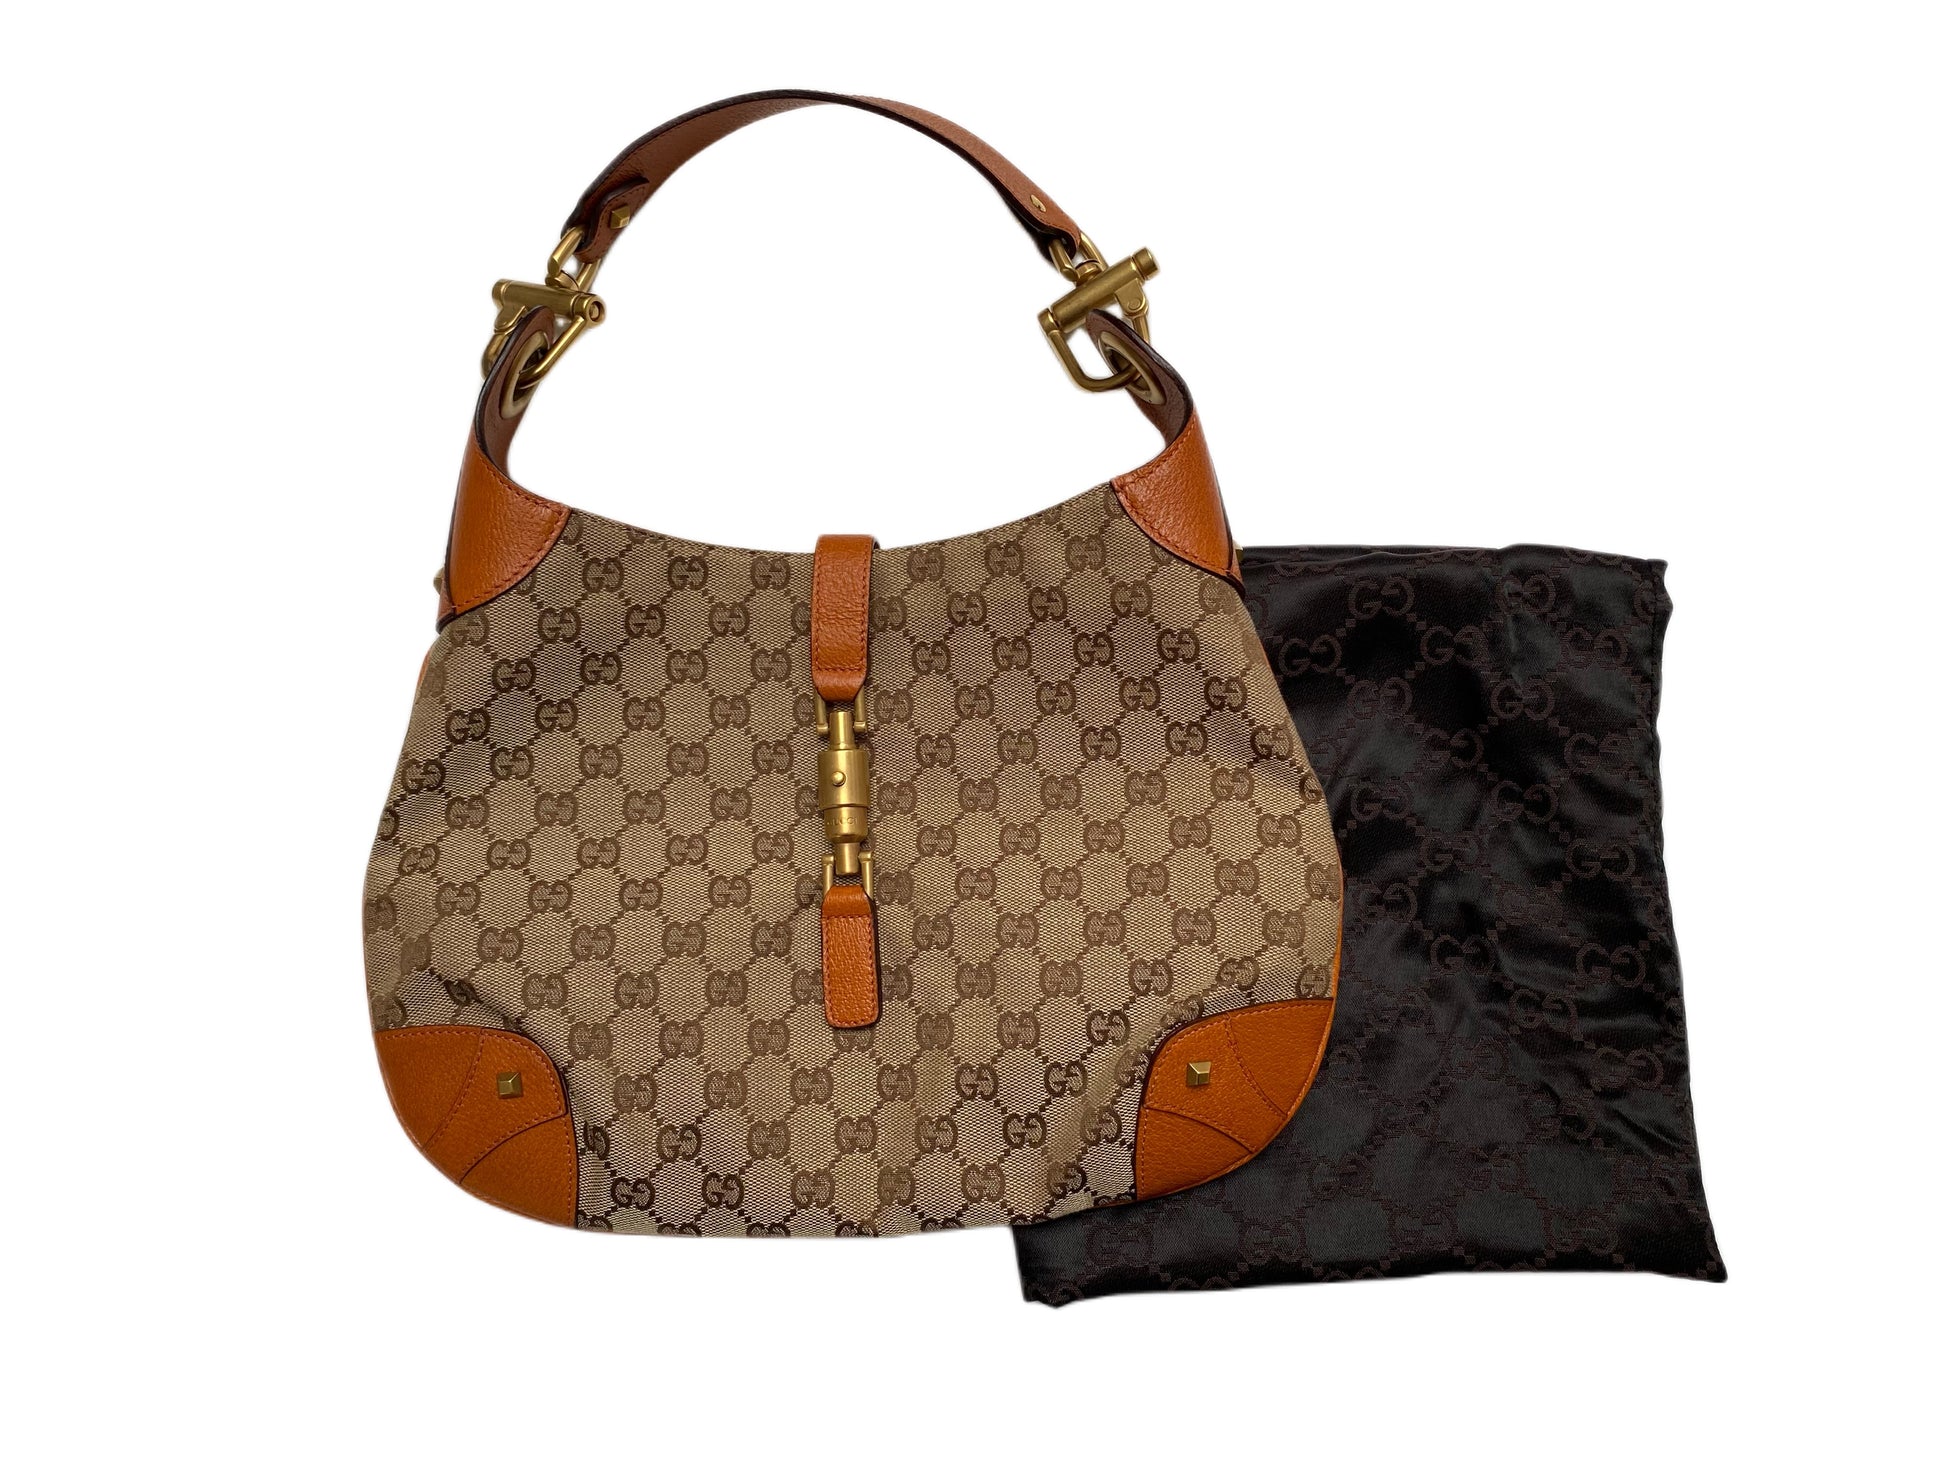 Vintage Gucci Jackie 1961 Leather Handbag 